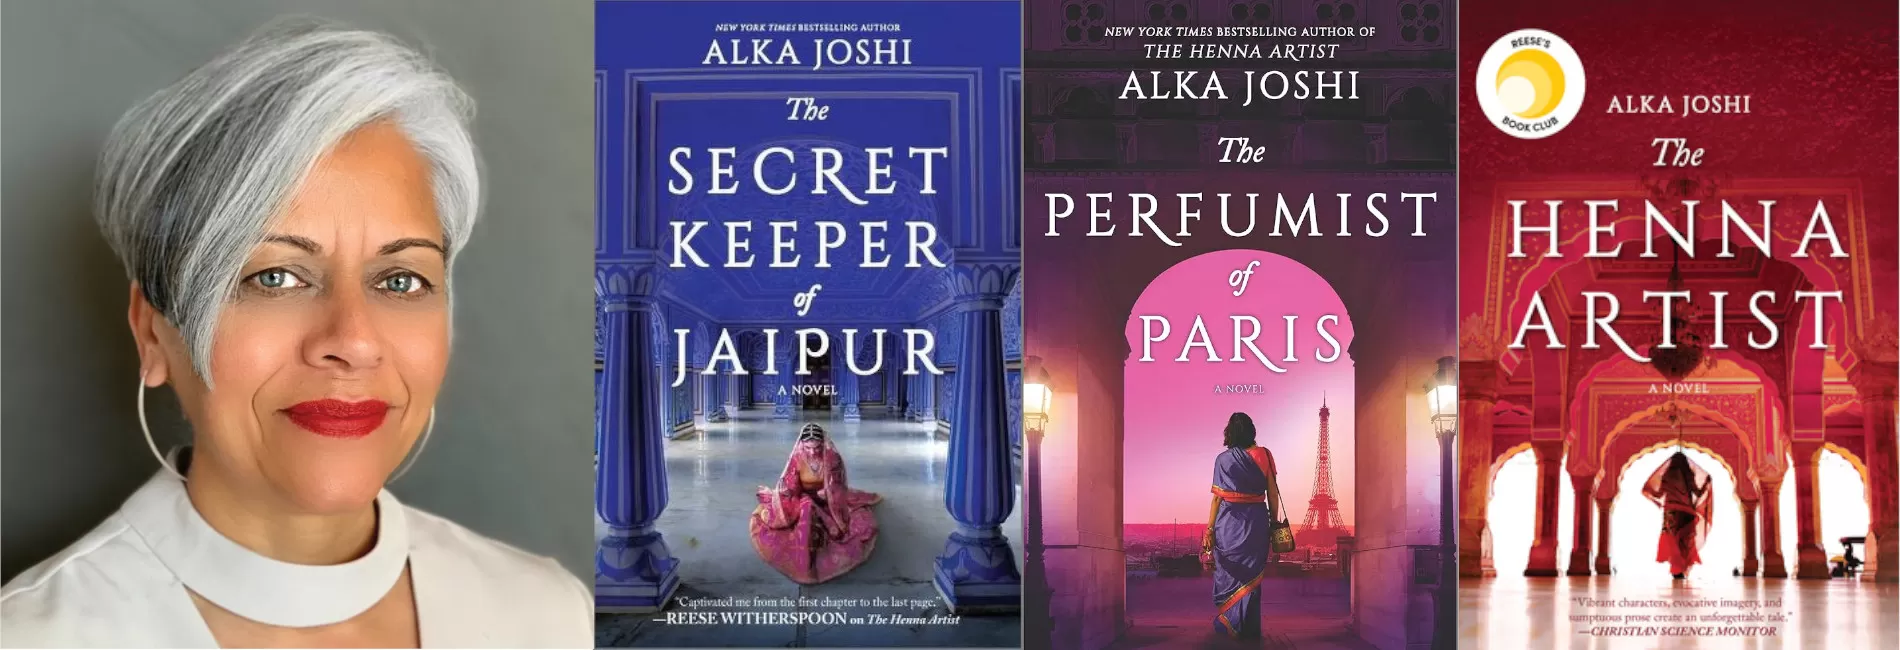 One City One Book presents Alka Joshi